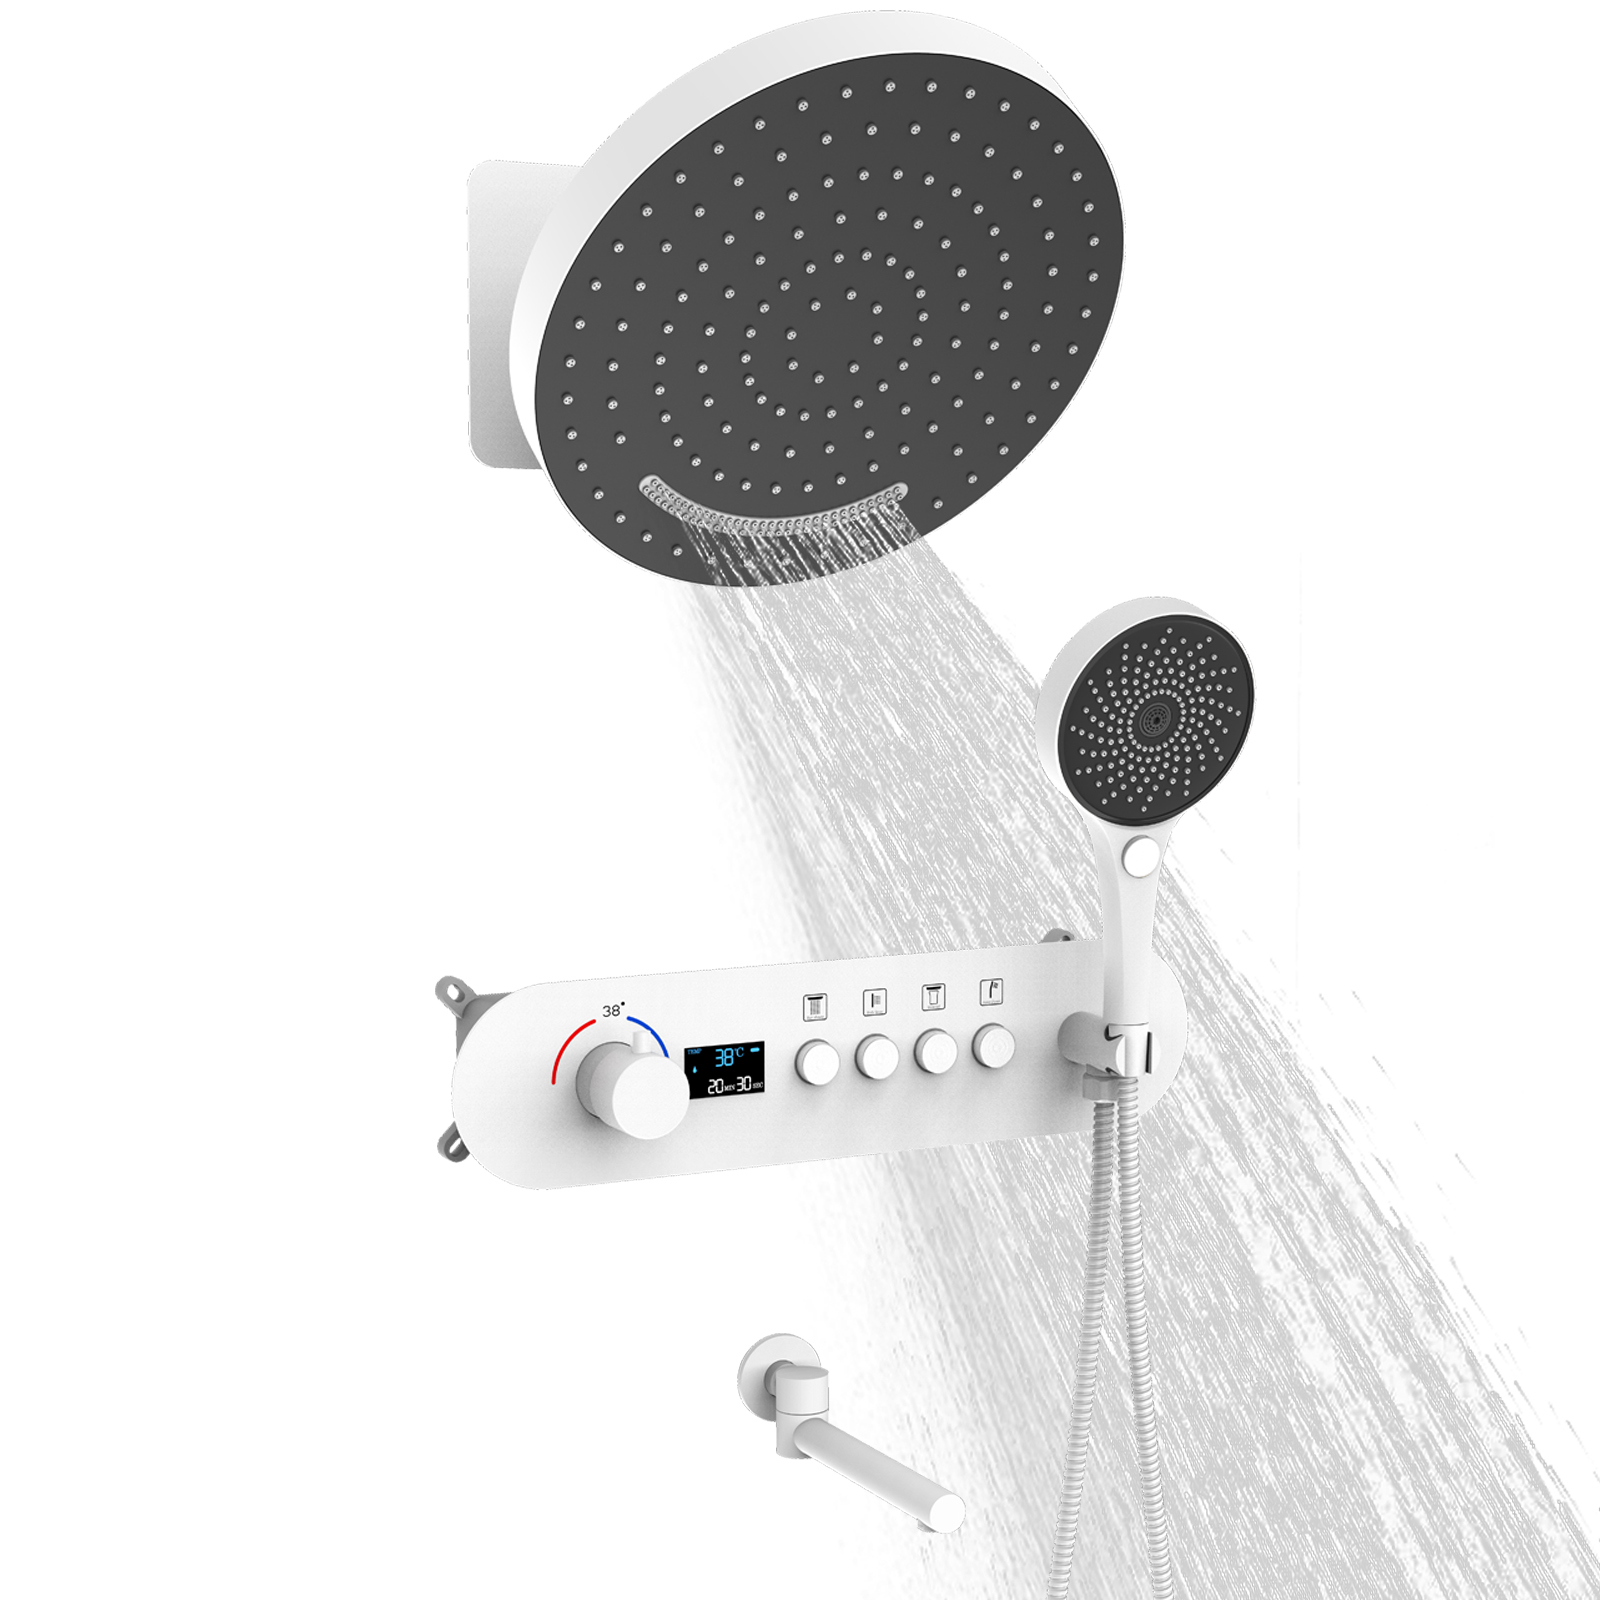 La válvula mezcladora de ducha de temperatura constante y lluvia montada en la pared redonda blanca reduce la salida de agua